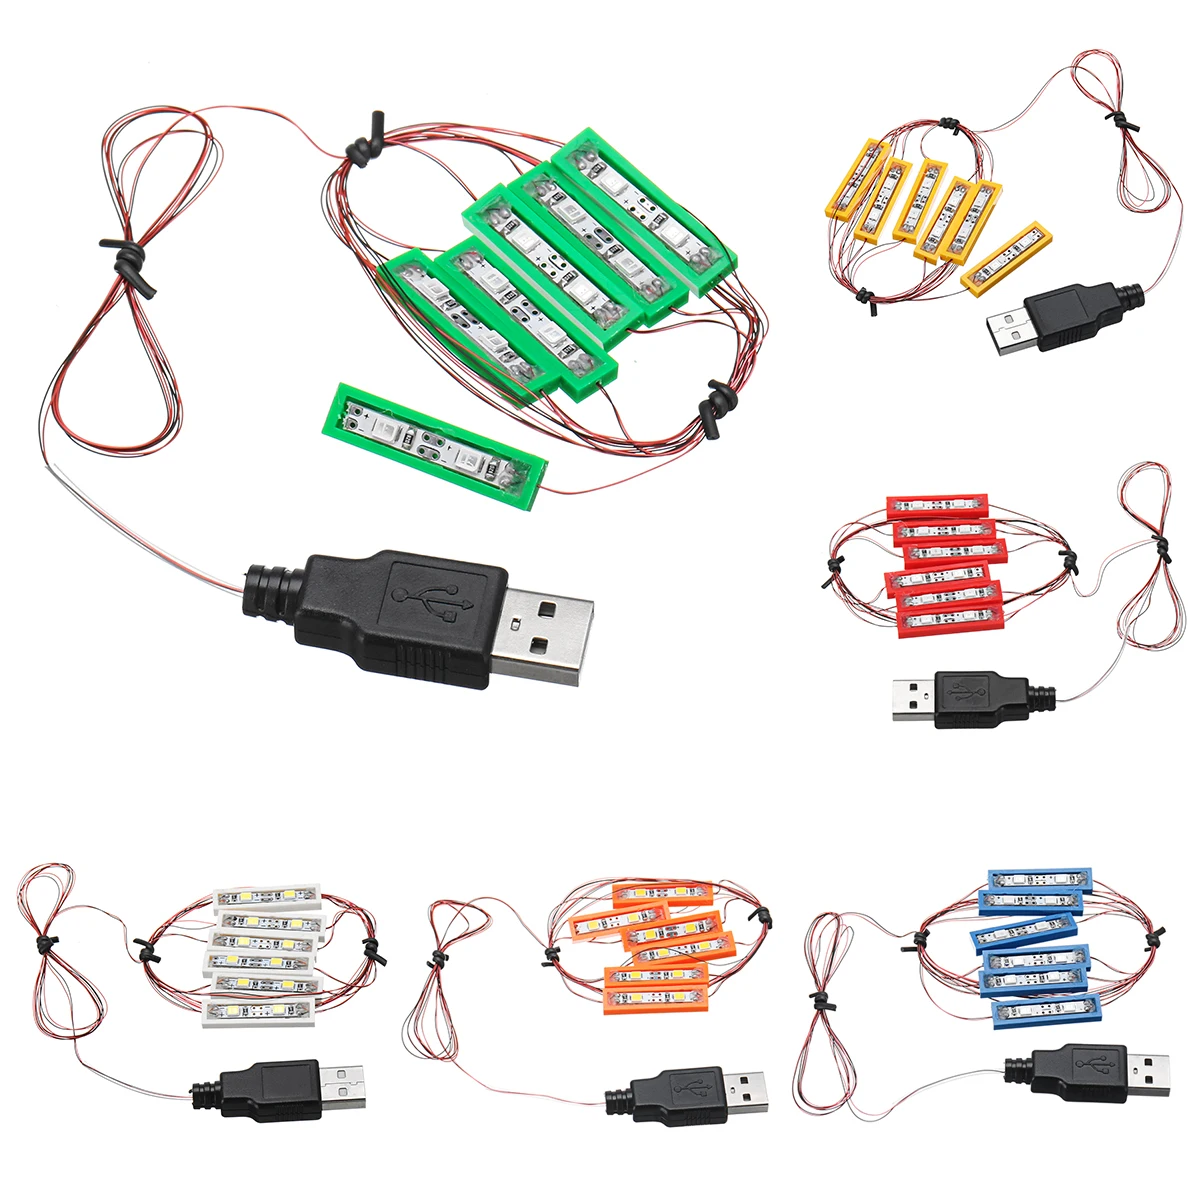 Universal 4 LED Bar-type Light Lighting Kit For Lego Toy Bricks Lamp USB Port 